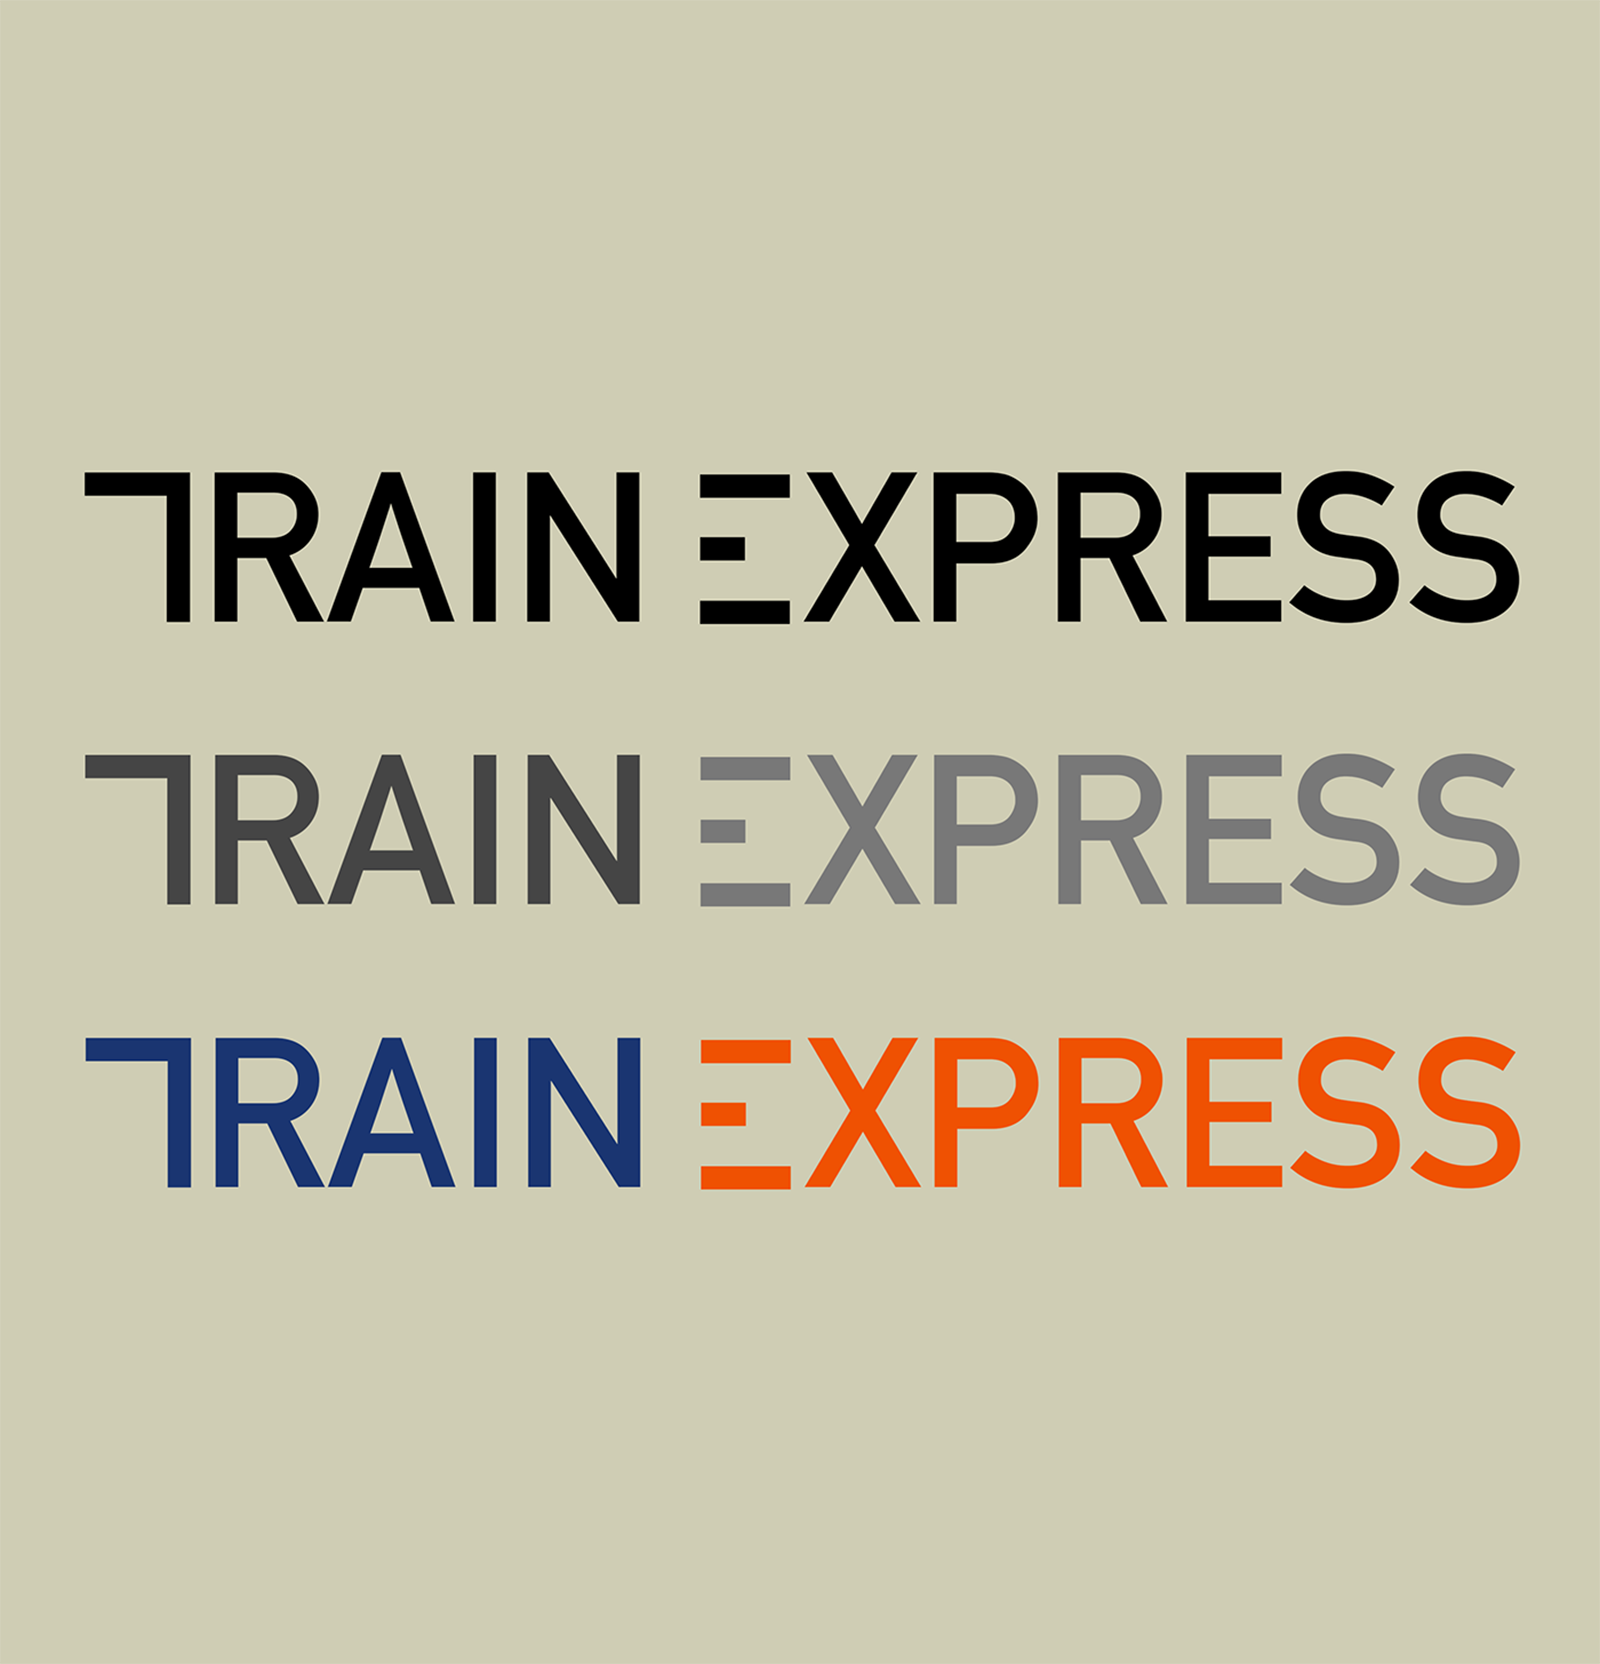 TRAIN EXPRESS快递品牌形象设计欣赏6